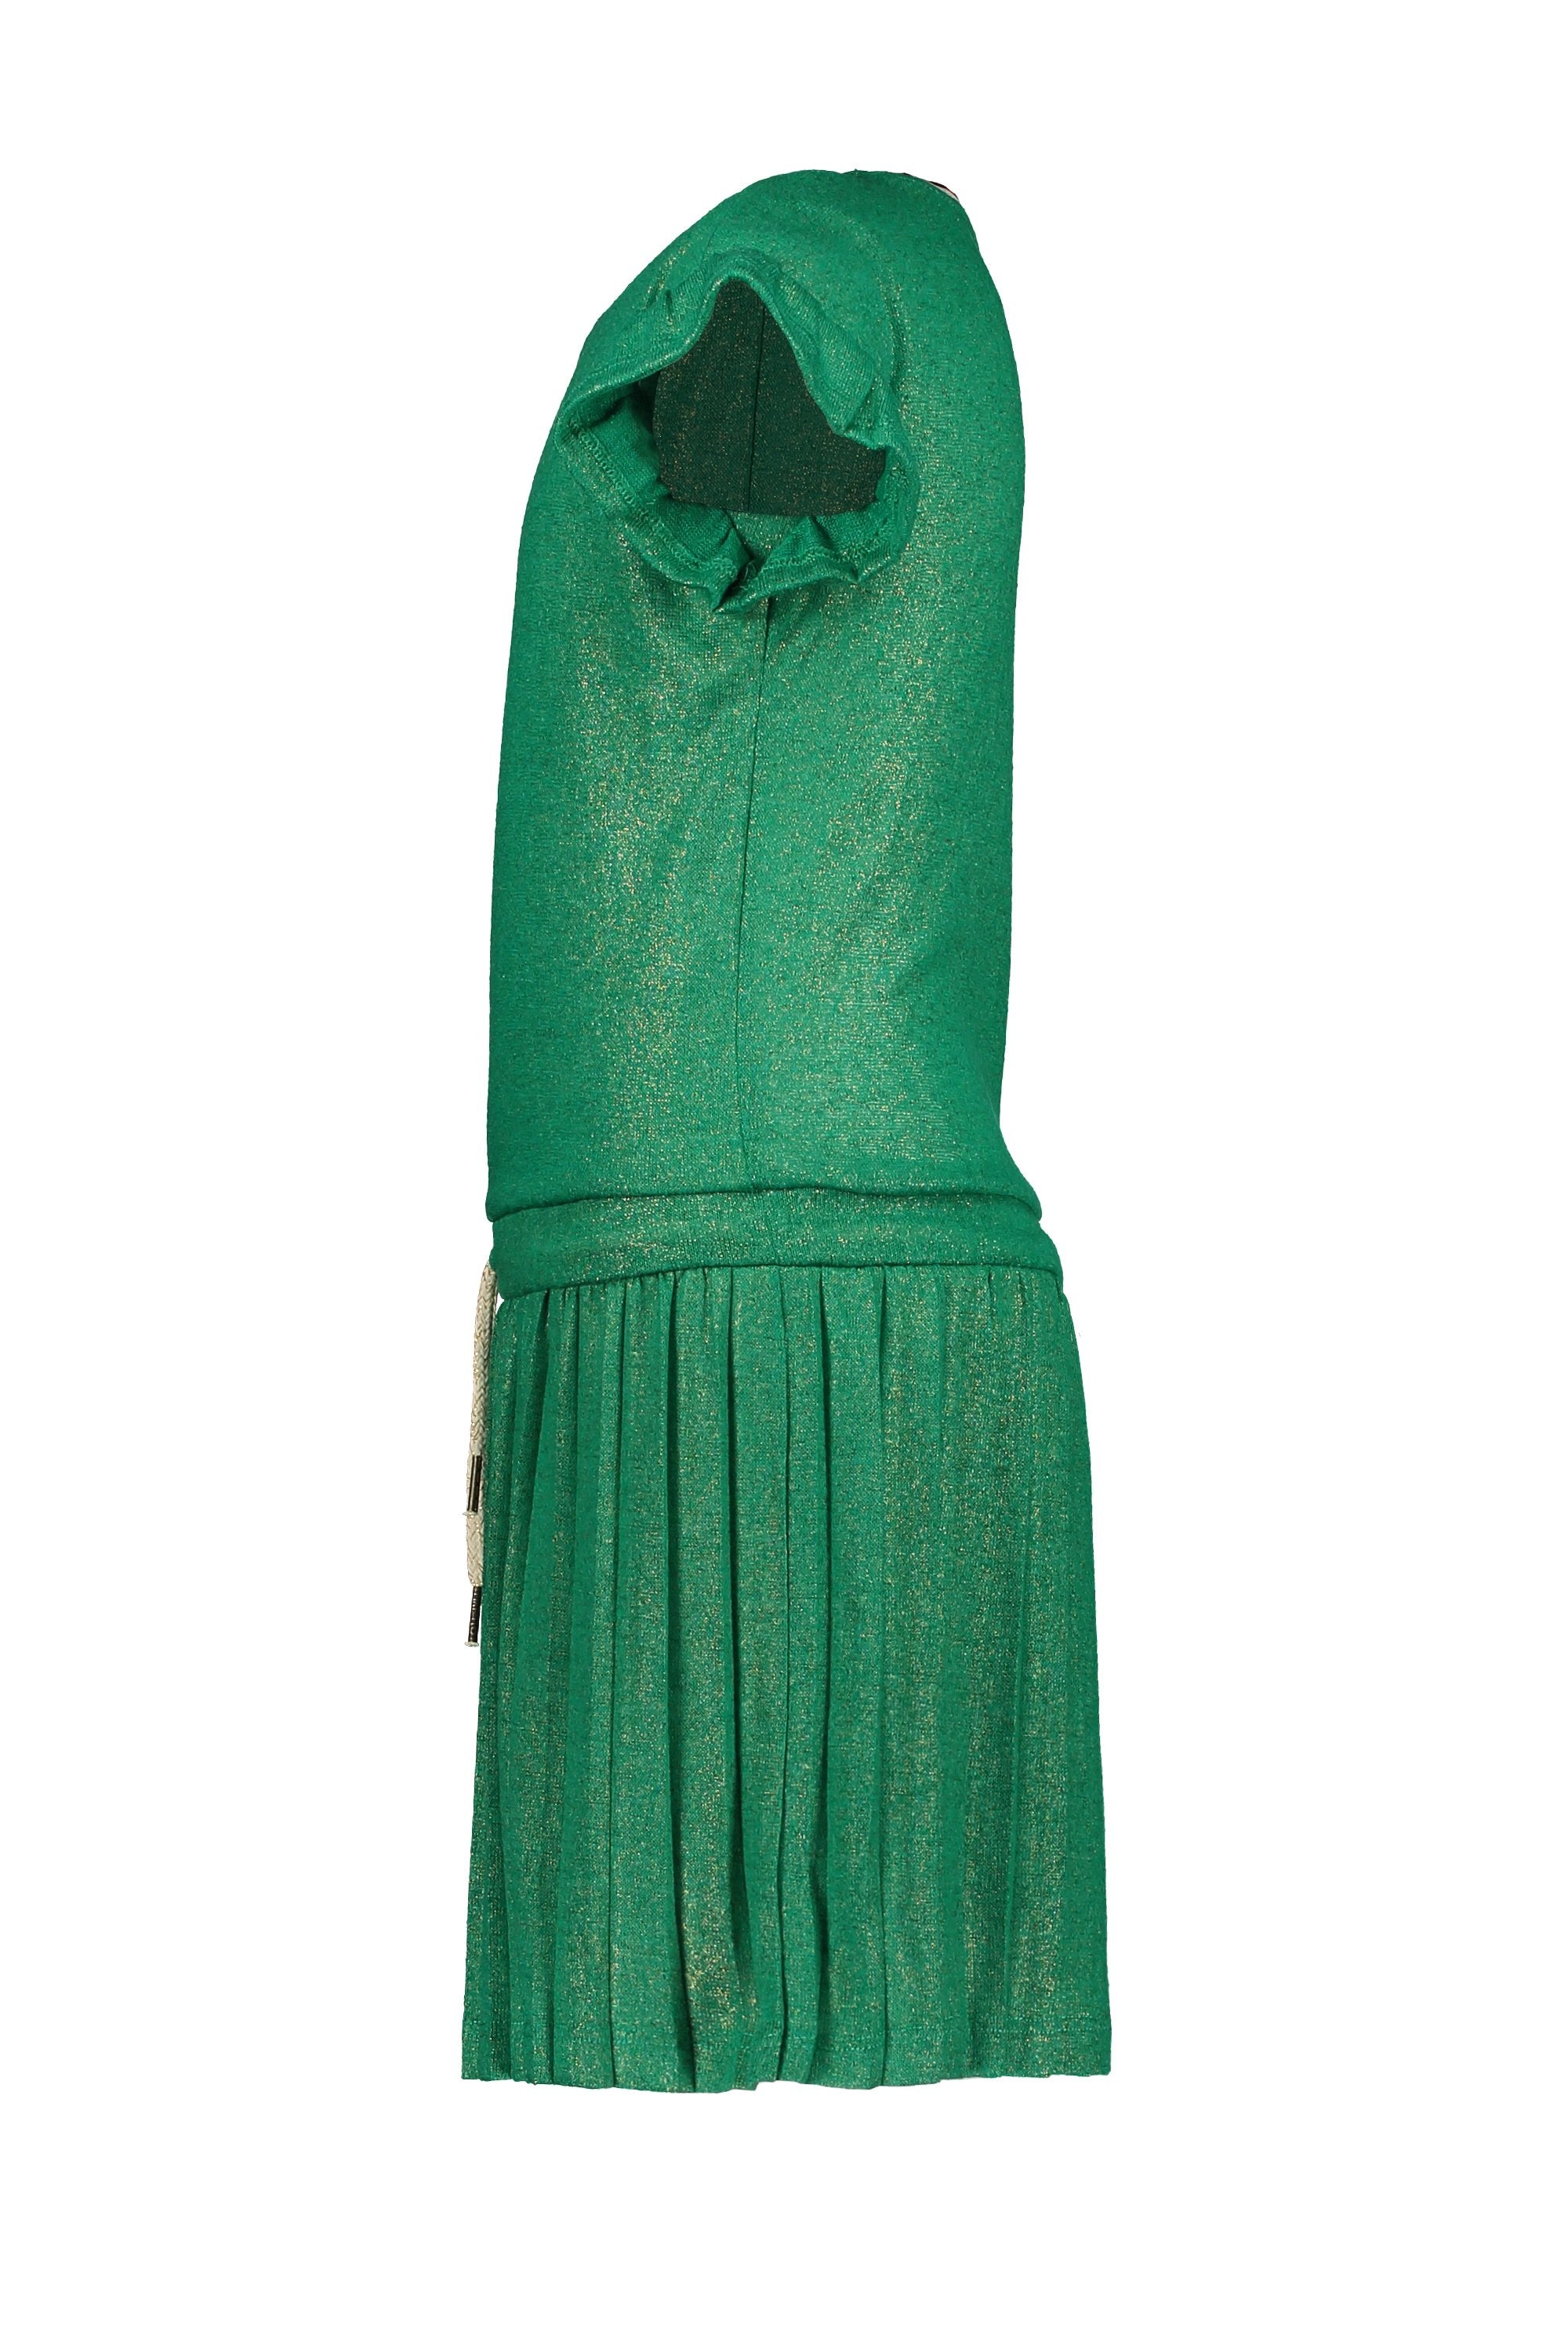 Meisjes Flo girls metallic jersey dress van Flo in de kleur Sea green in maat 128.